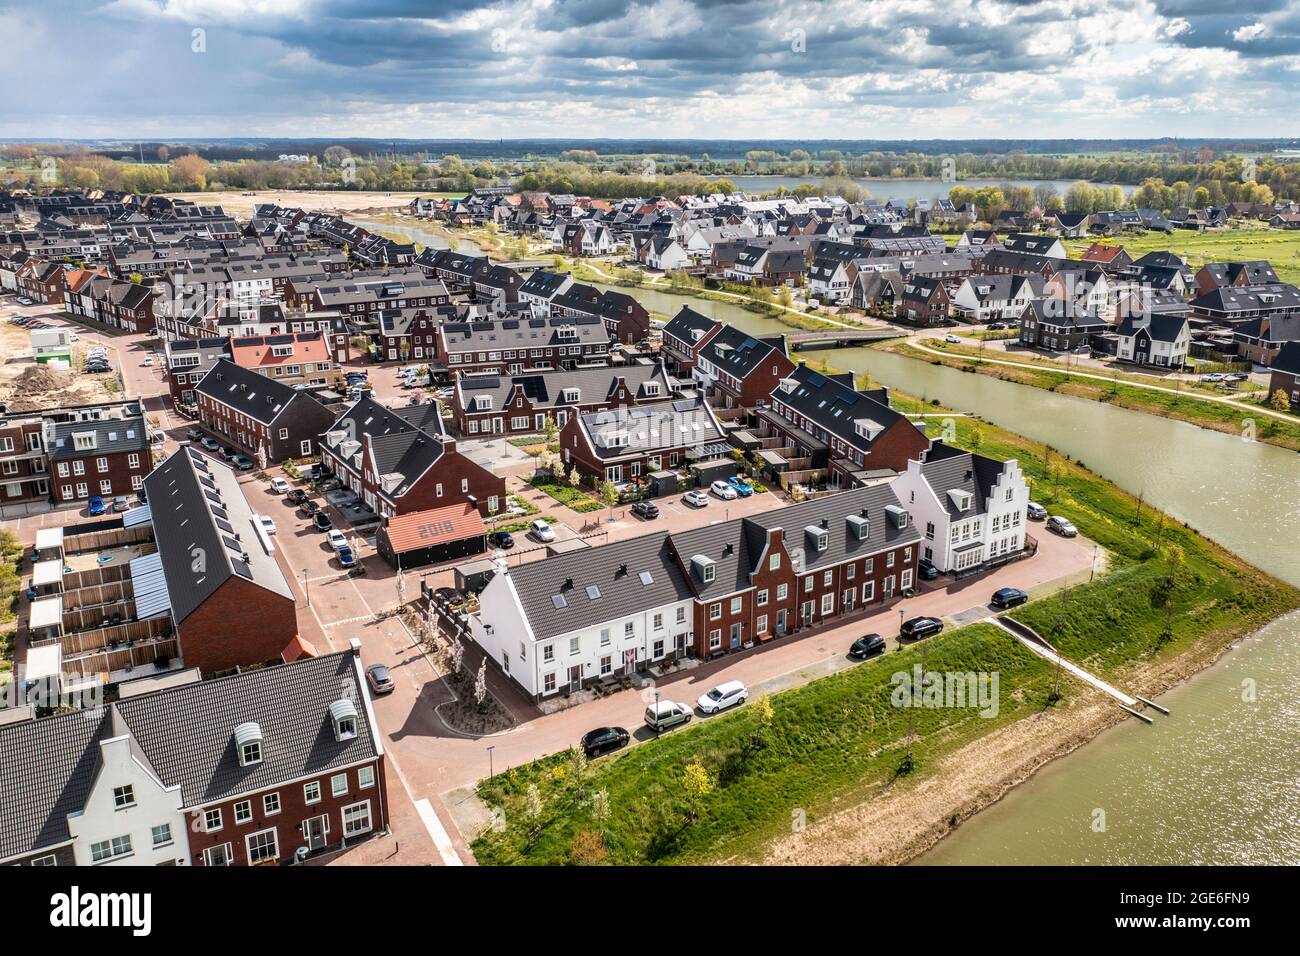 Niederlande, Vianen, Wohngebiet. Neue Wohnsiedlung. Nachbarschaften bekannt als Vinex-wijken (Vinex Nachbarschaften). Antenne. Stockfoto